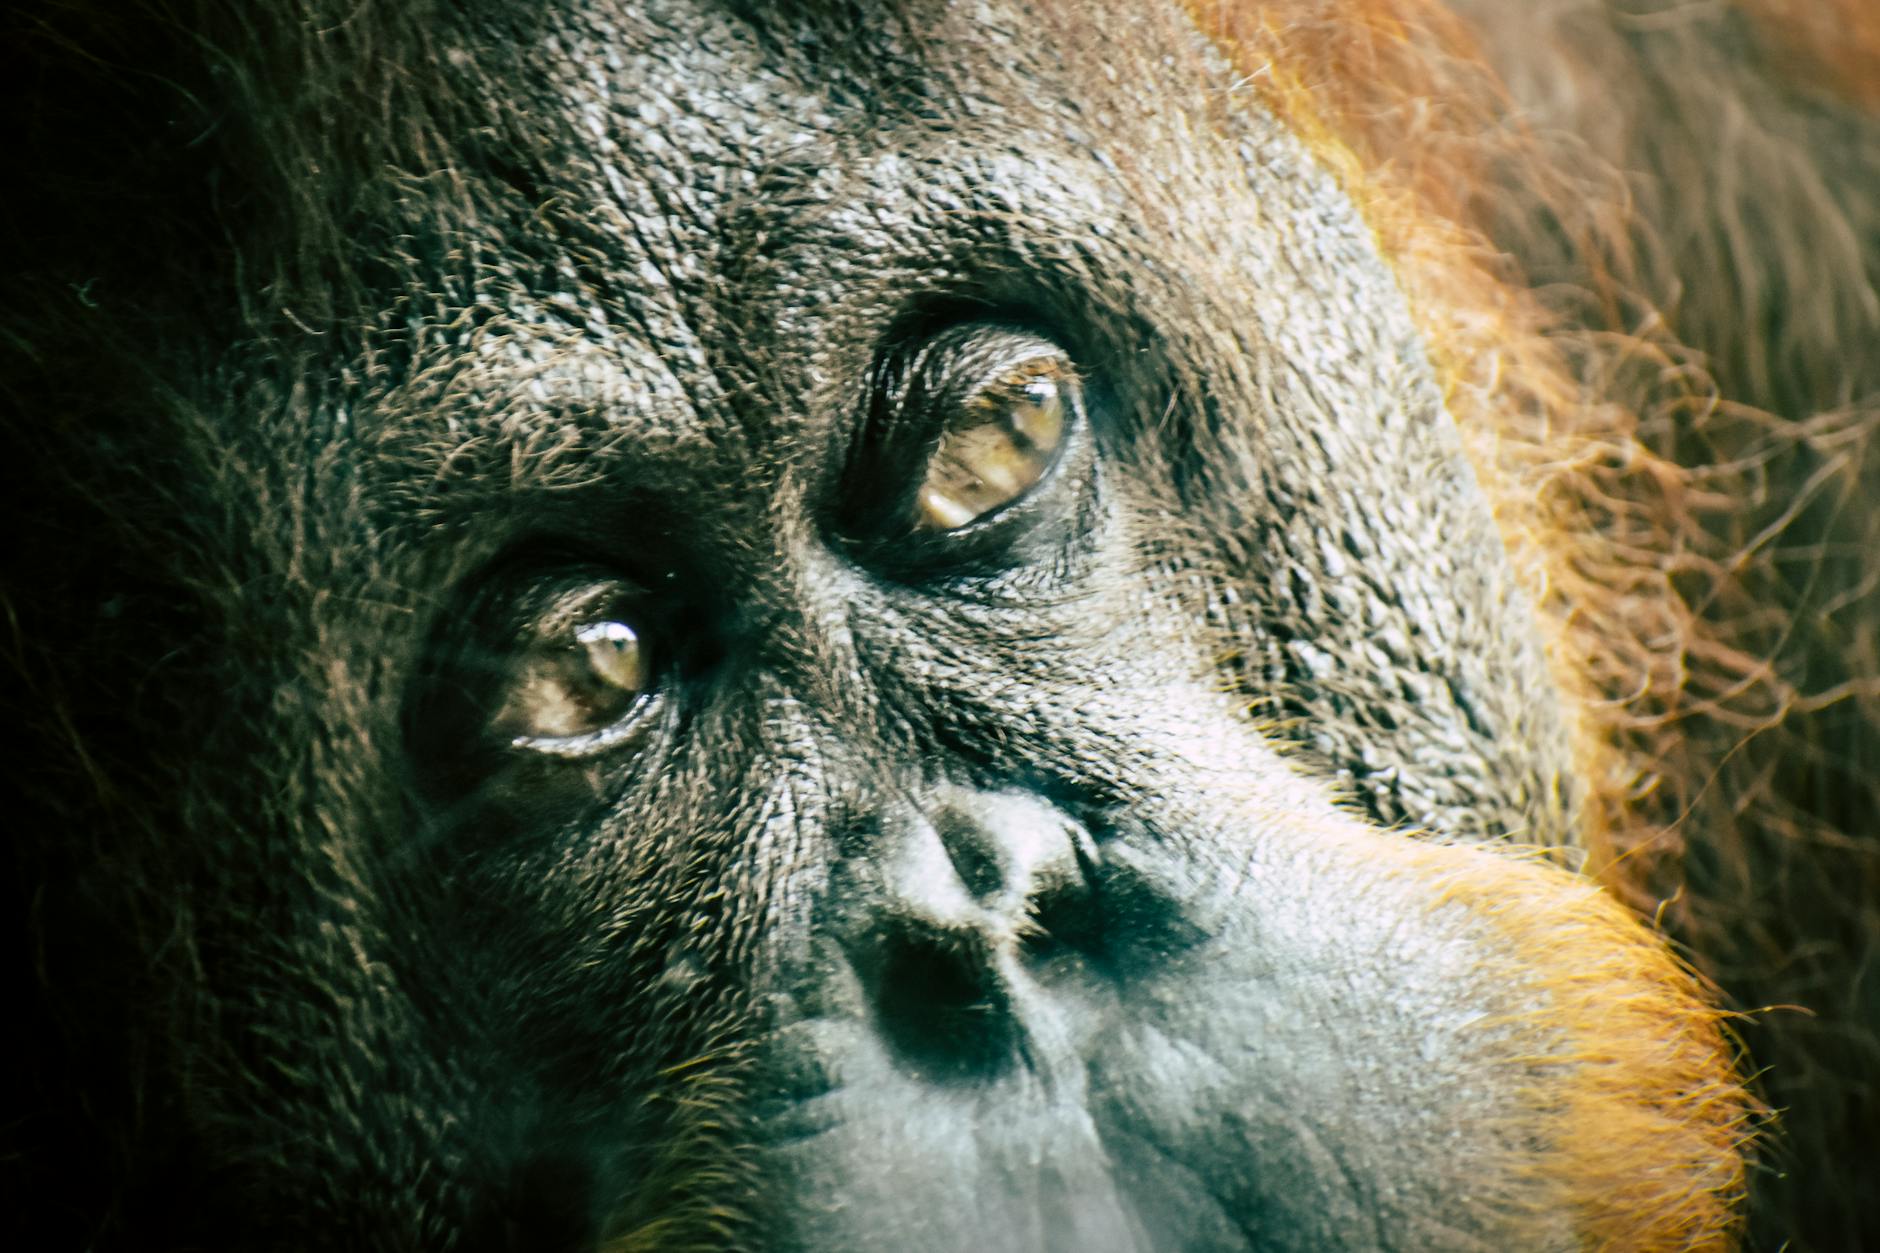 How Smart Are Orangutans?